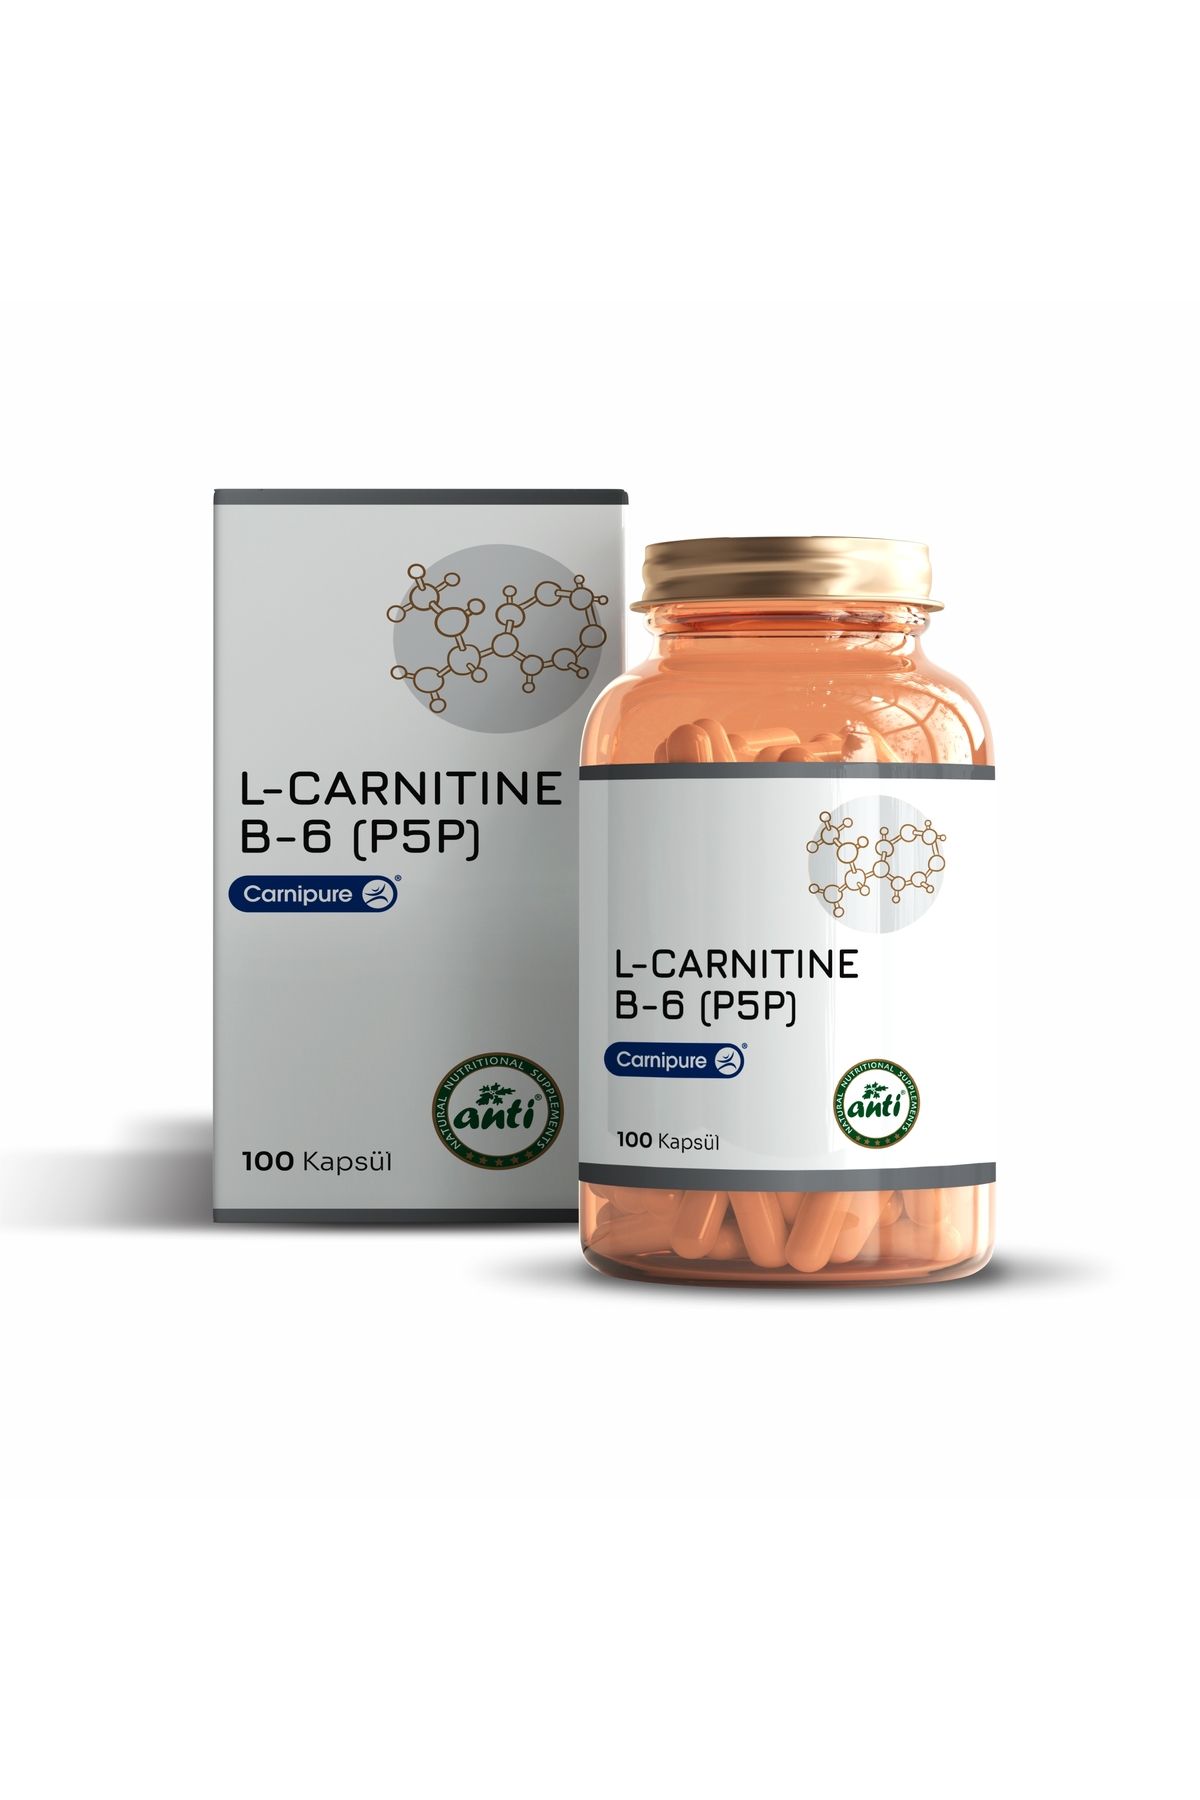 anti L Carnitine Kapsül (Carnipure) & B6 ( P5P )